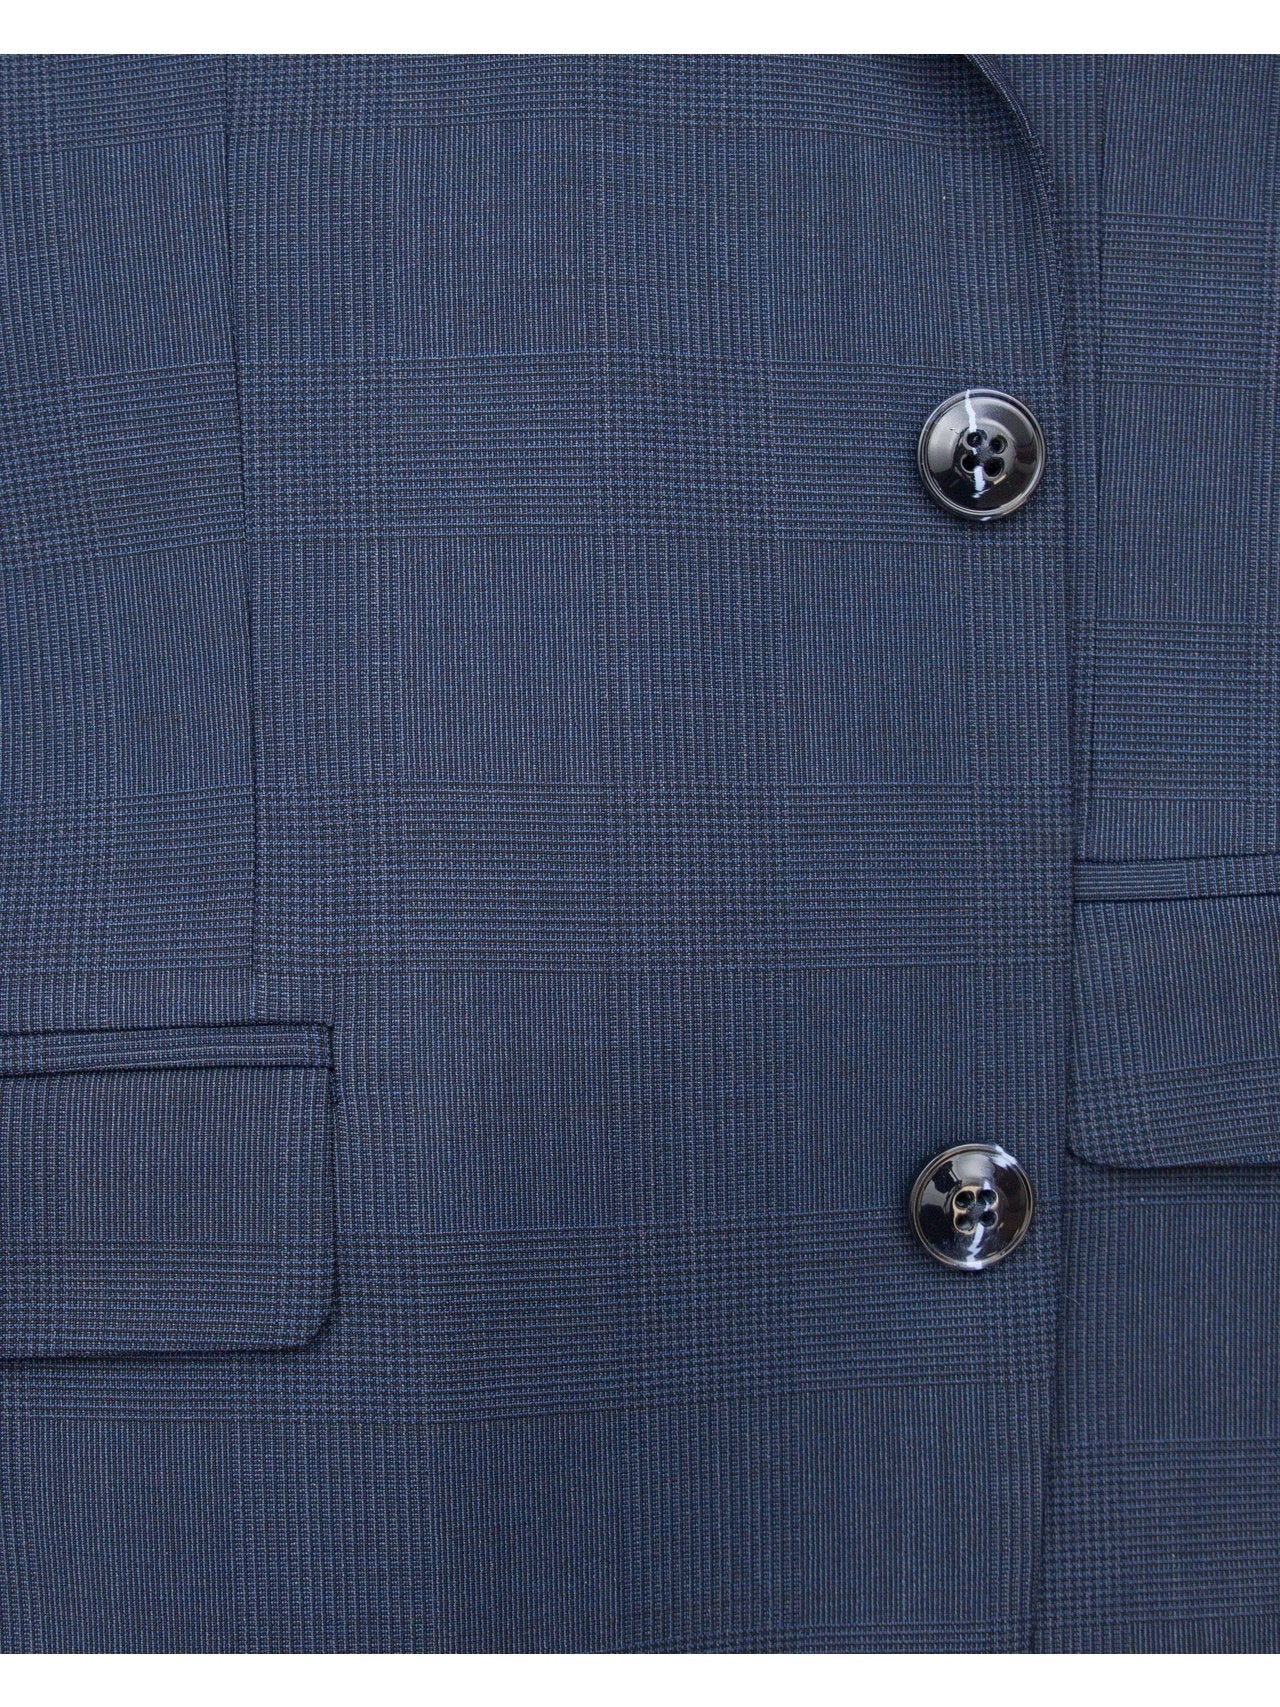 Carducci SUITS Carducci Mens Navy Blue Plaid Wool Blend Slim Fit Suit With Peak Lapels